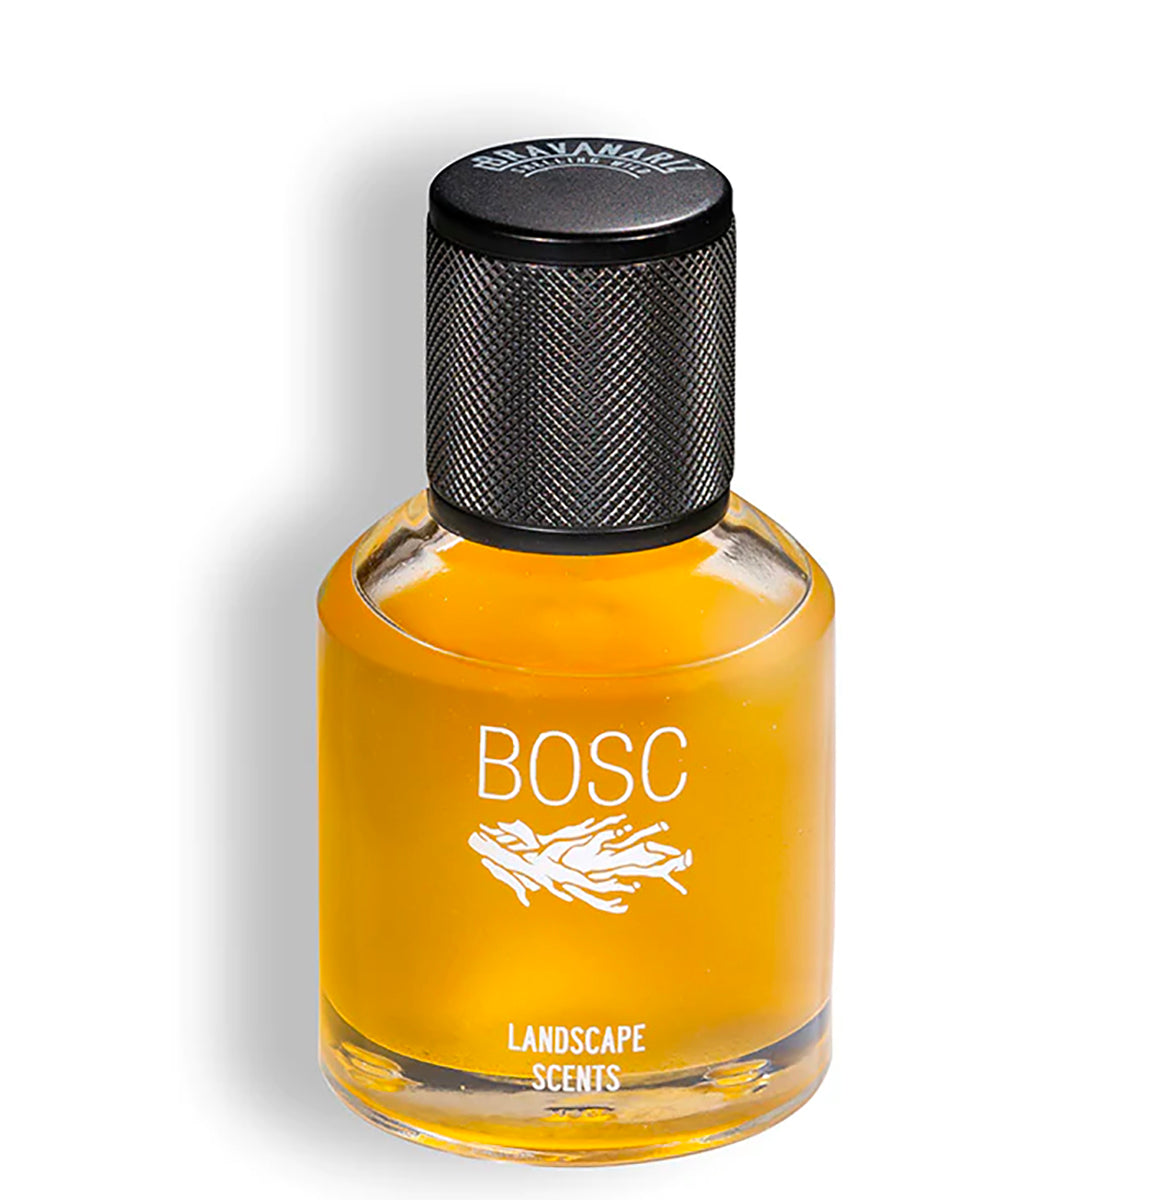 Bosc by Bravaniriz at Indigo Perfumery